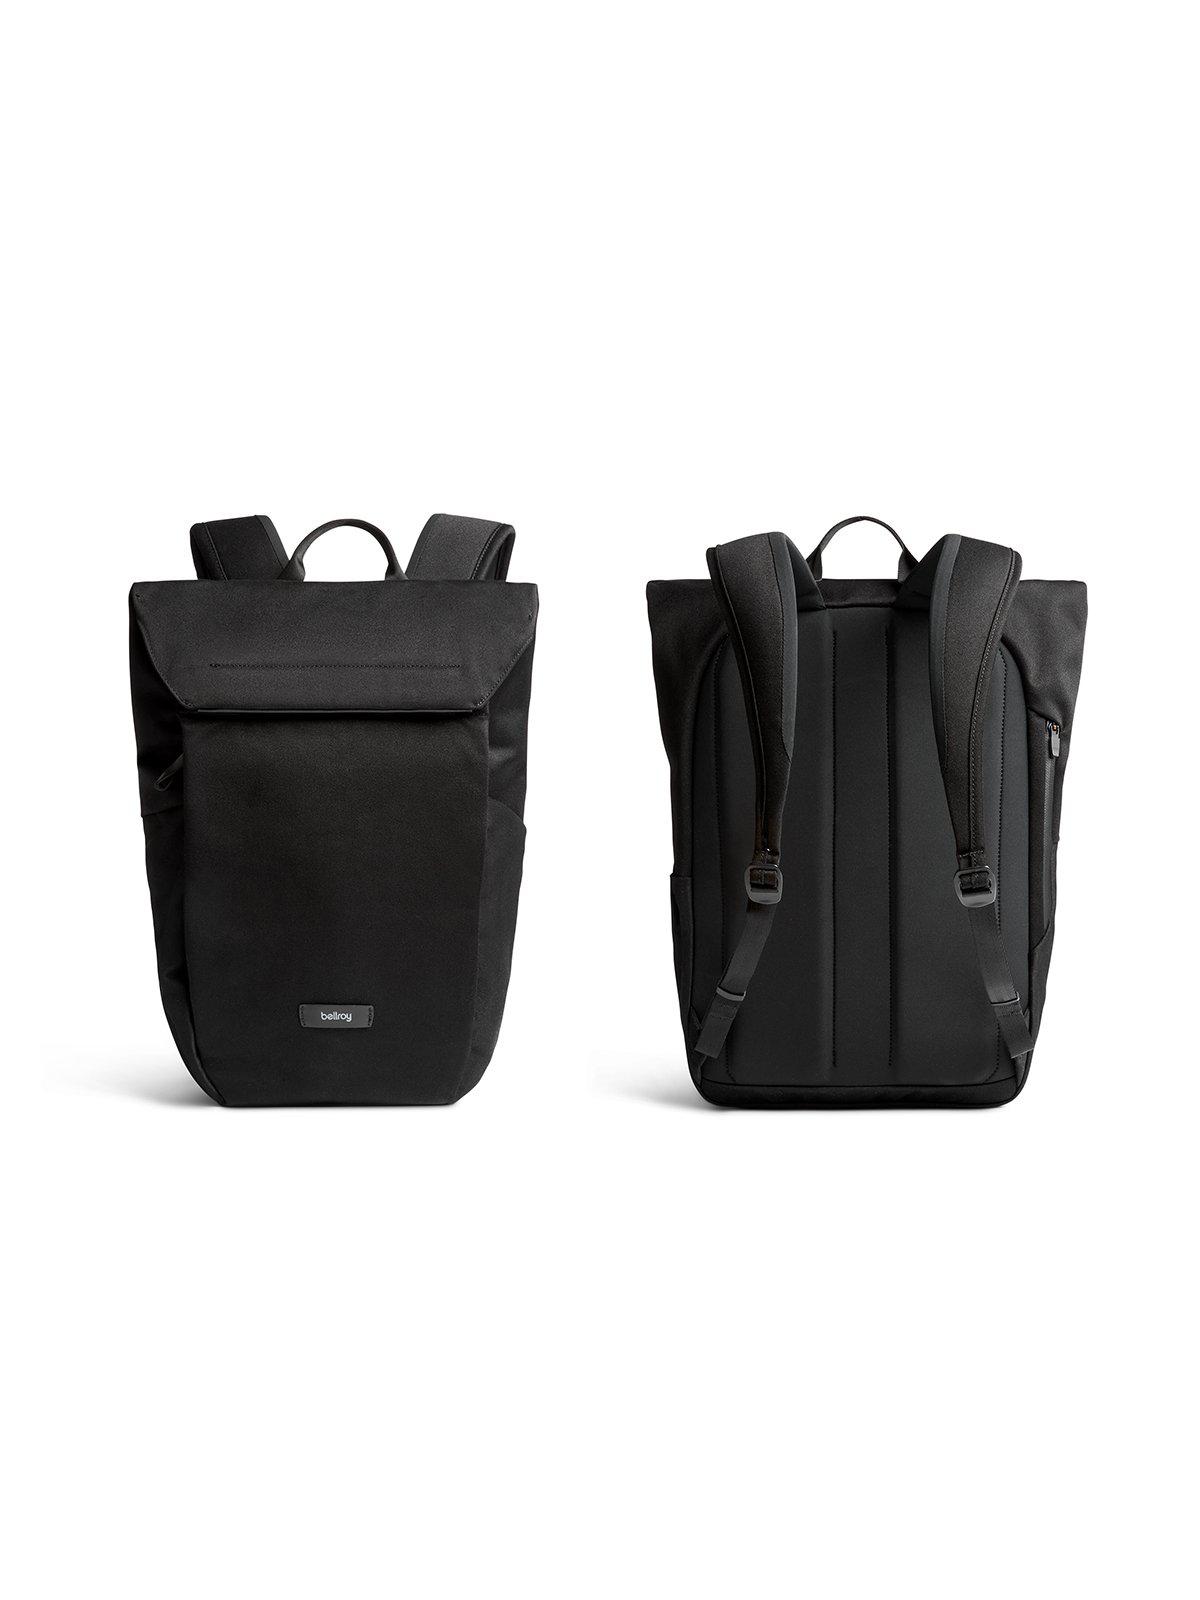 Bellroy Melbourne Backpack Compact Melbourne Black